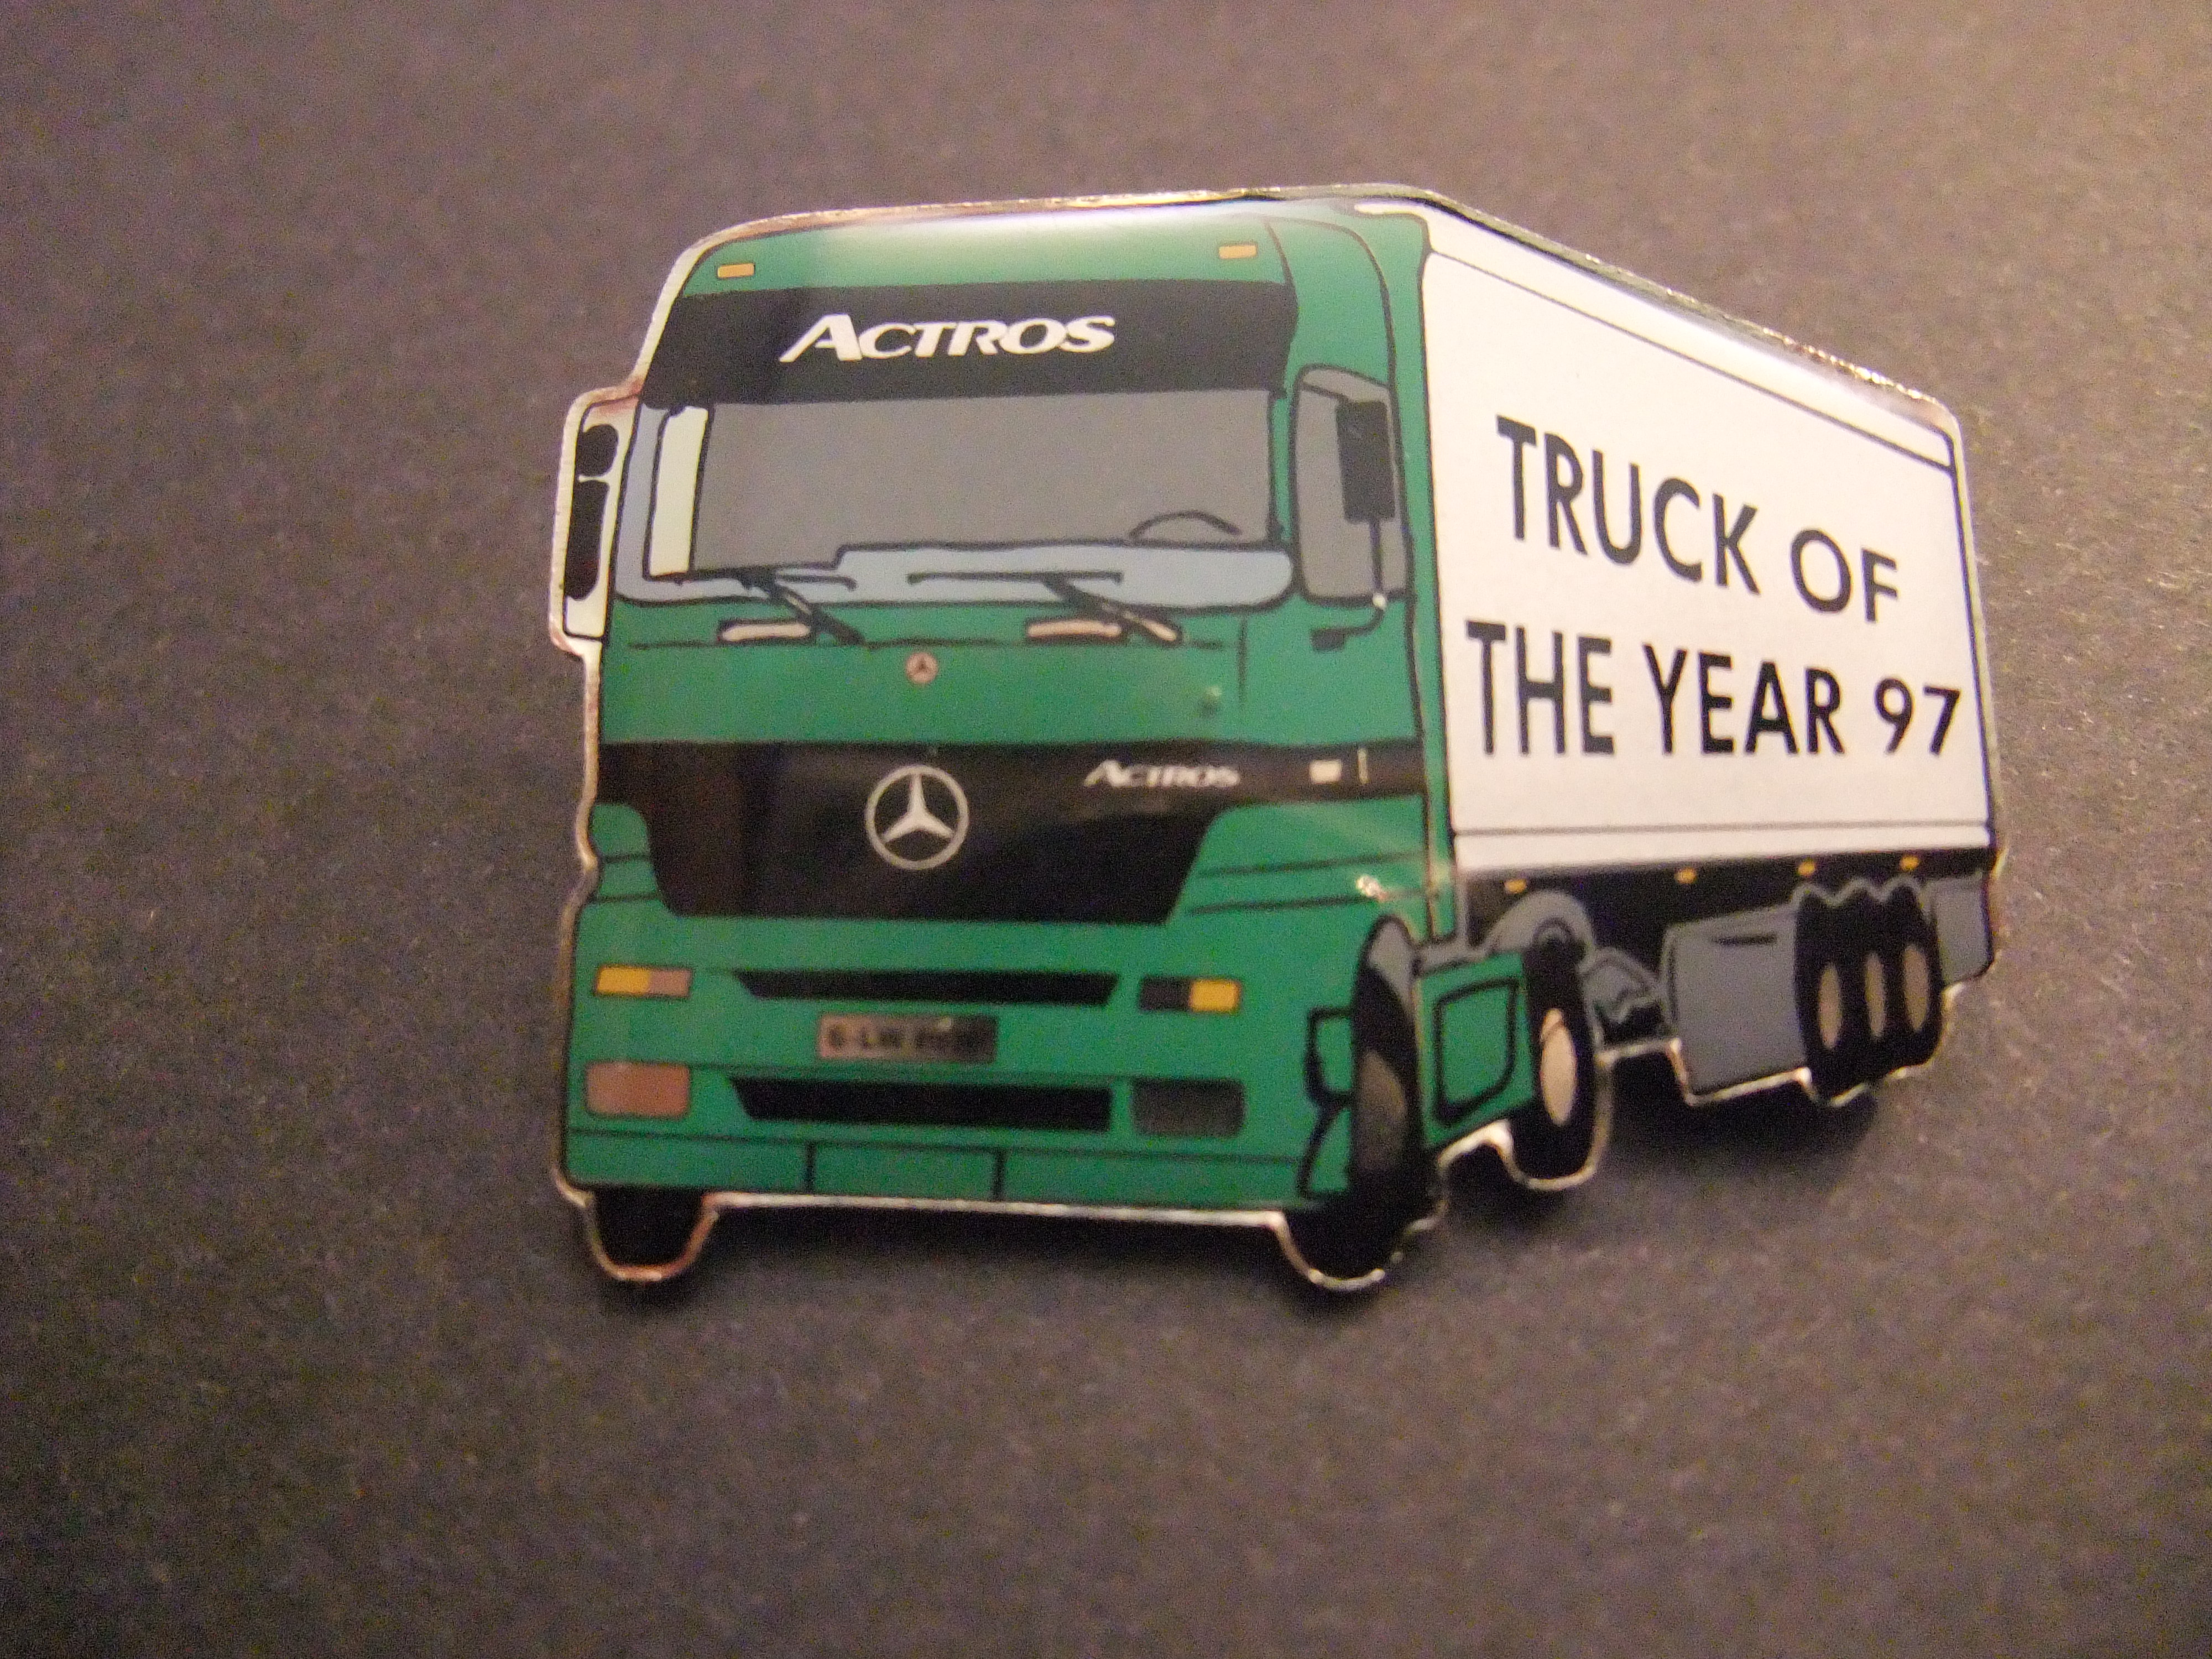 Mercedes-Benz Actros  vrachtwagen truck of the year 1997